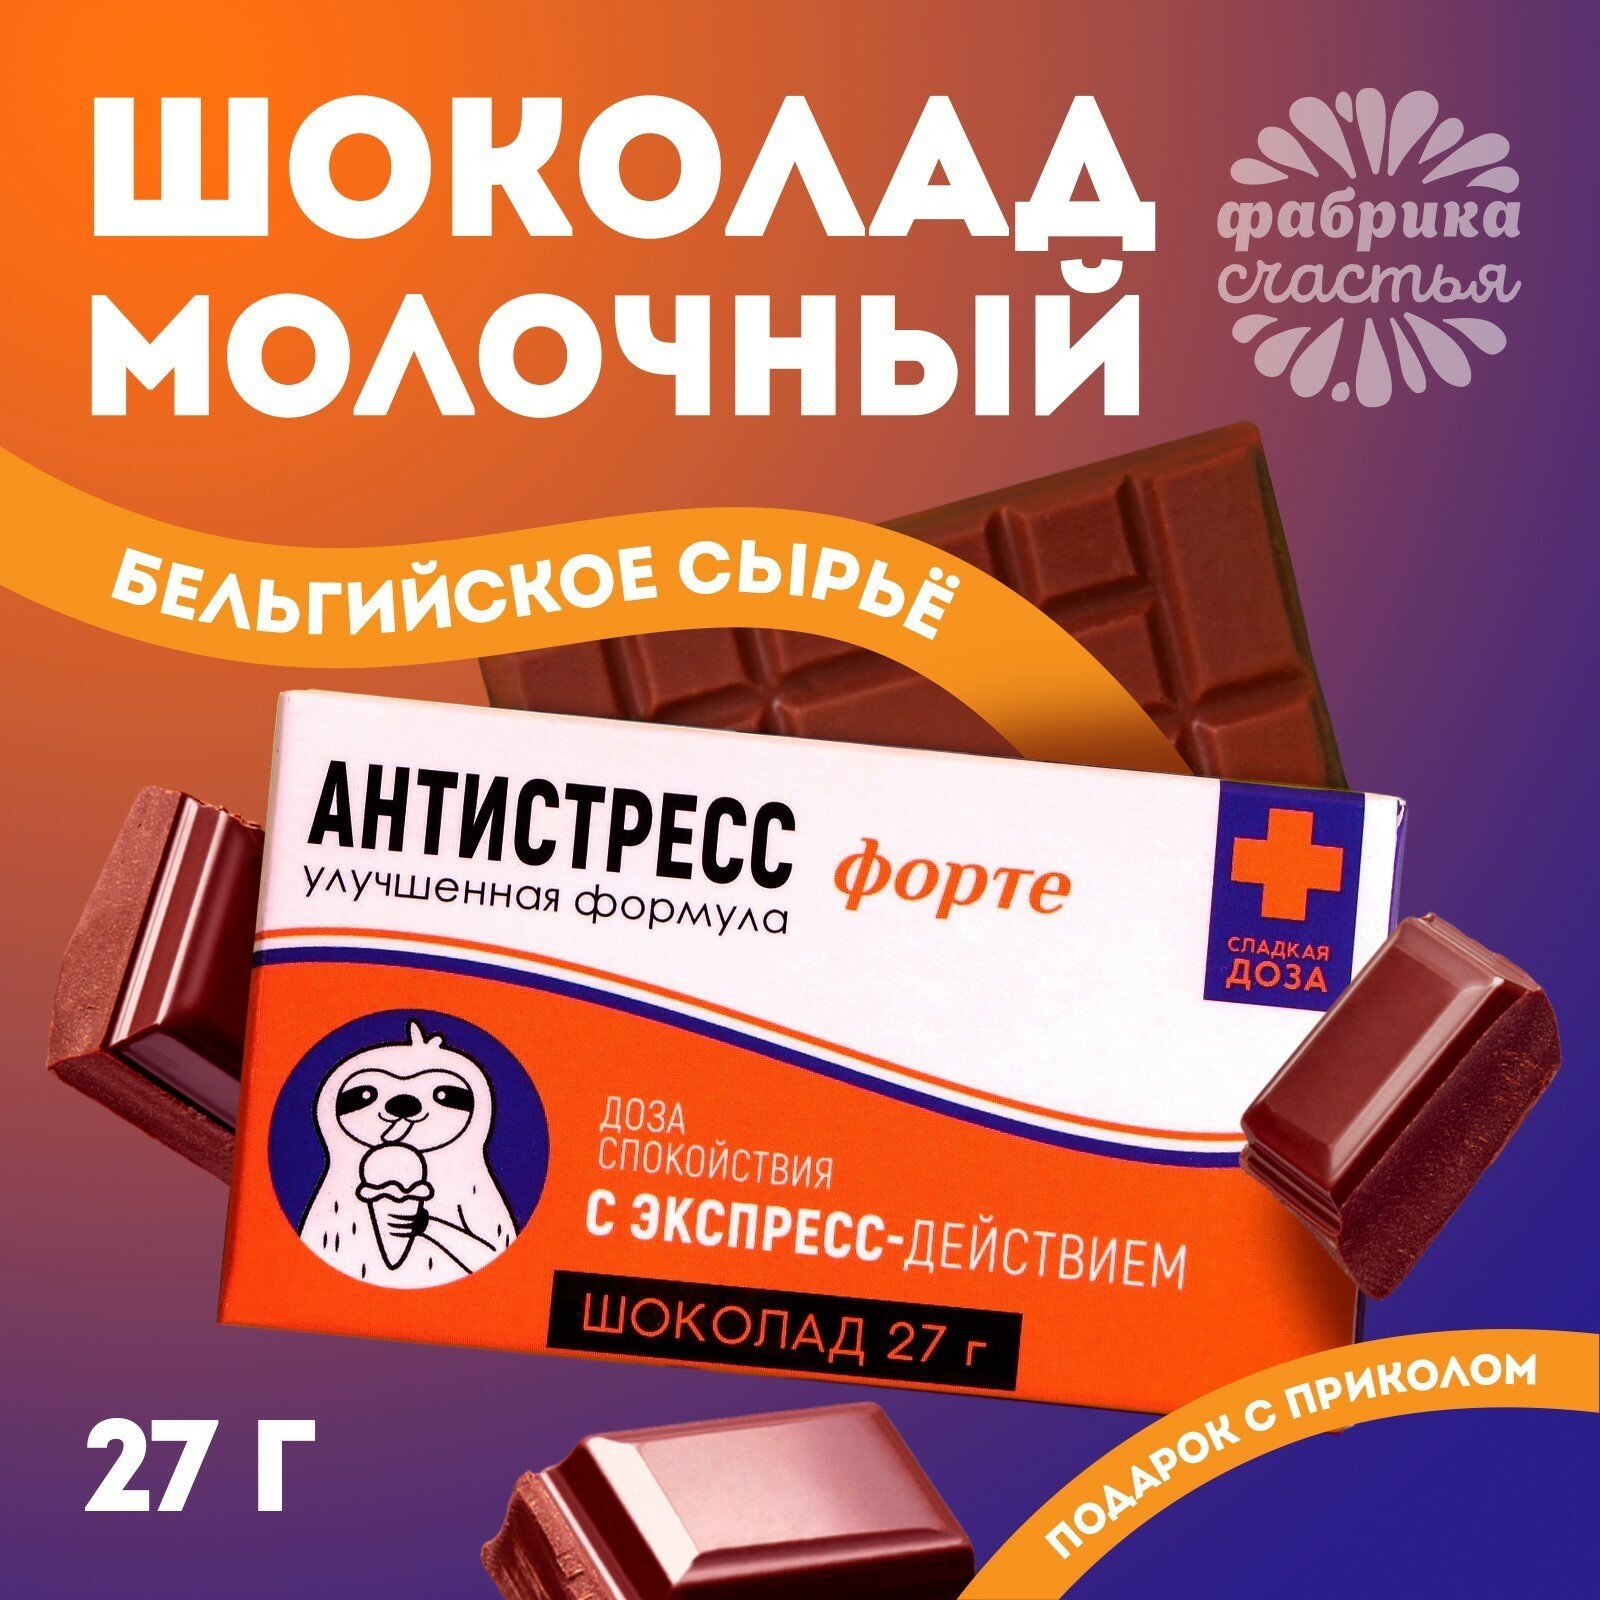 Подарочный молочный шоколад с приколом "Антистресс форте", 27 г.